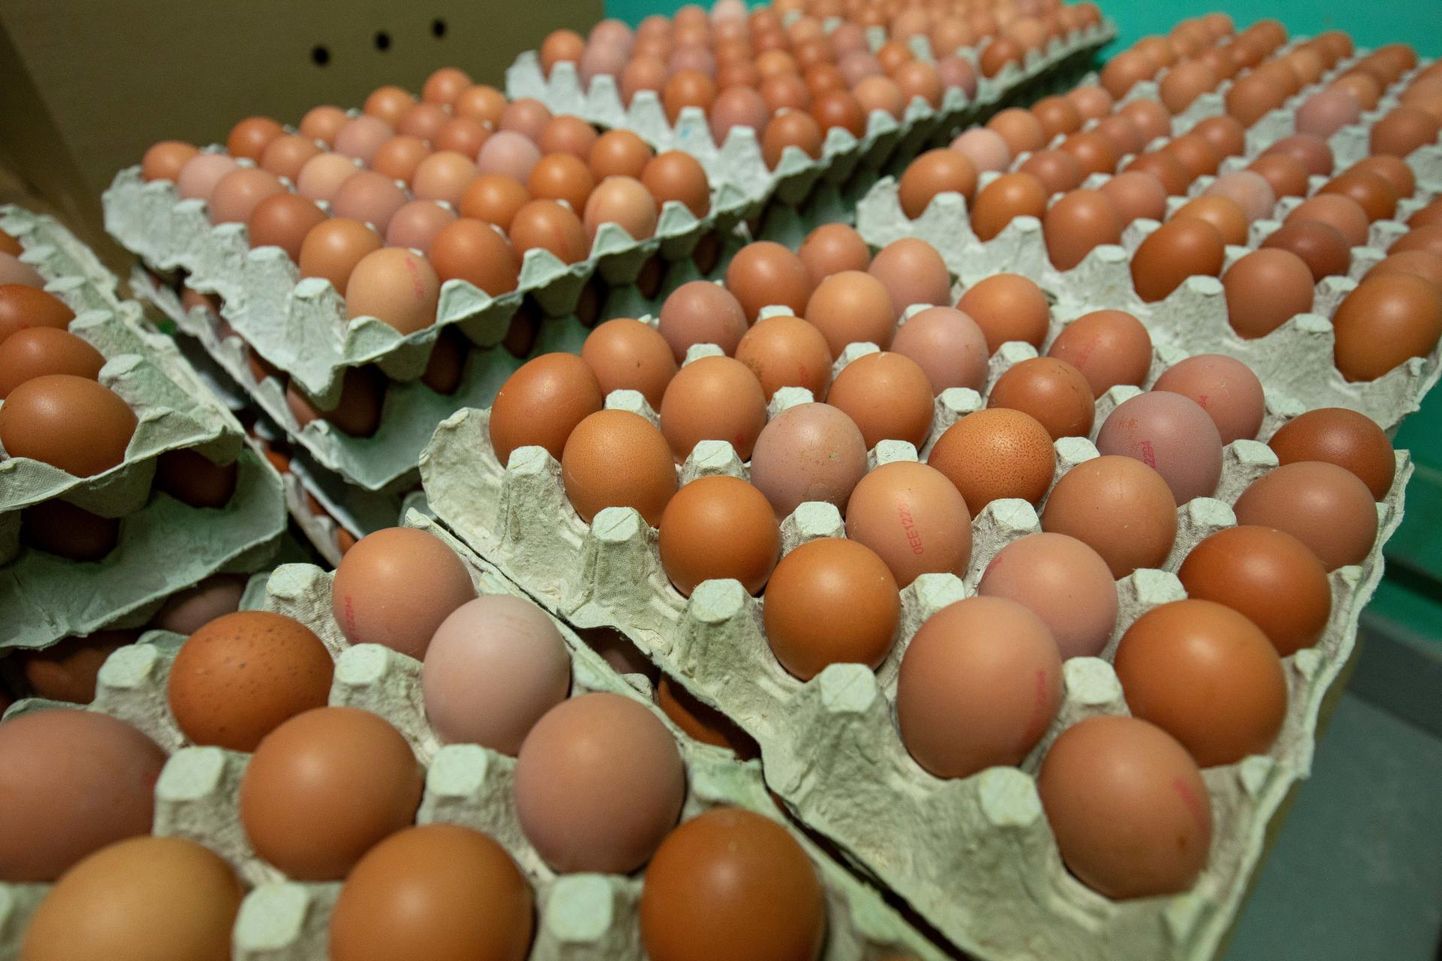 Eestis toodetud mune ei jätku ja lausa üle 50 protsenti Eestis müüdavatest munadest pärineb piiri tagant – Lätist, Leedust või Poolast, mõnikord ka Ukrainast.